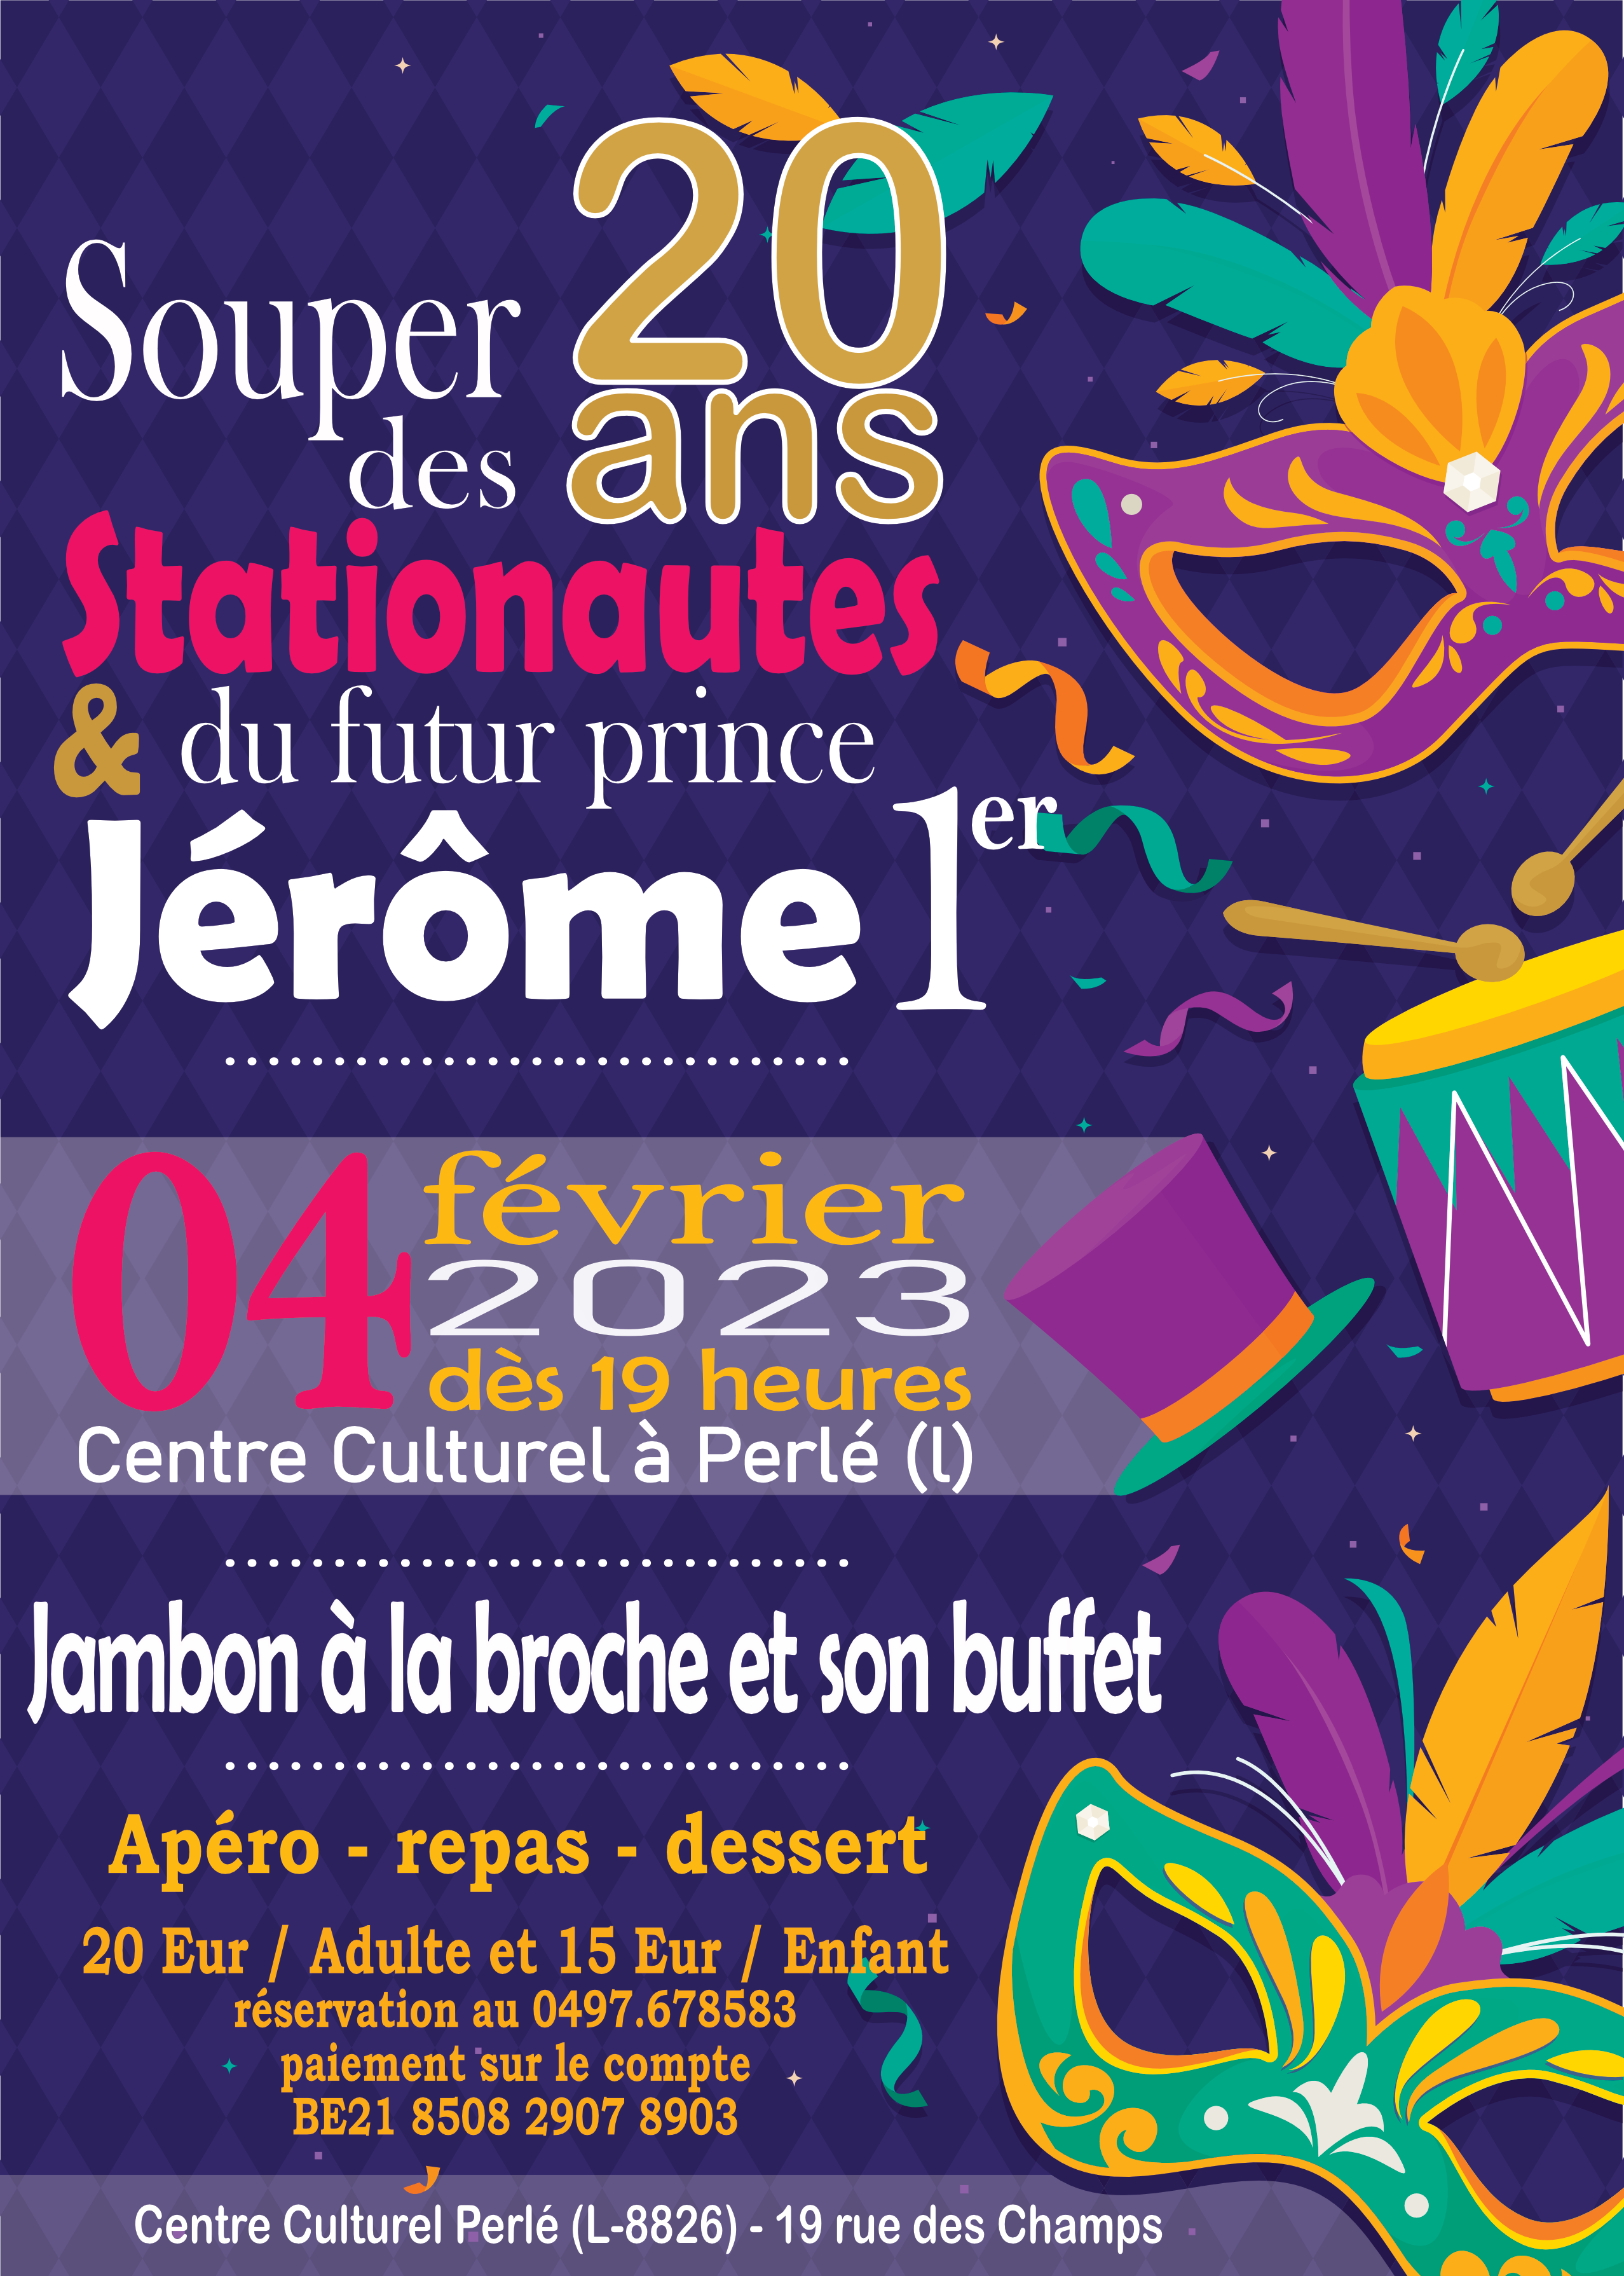 Carnaval de Martelange - Rejoignez-nous ce samedi 04 février pour fêtez les 20 ans du groupe d'animation <b>Les Stationautes</b> et le futur Prince 2023 <b>Jérôme 1er</b> !<br><br>

<b>Infos et réservations :</b><br><br>

Menu : Jambon à la broche et son buffet (apéro/repas/dessert)<br>
Réservation au +32 497 67 85 83<br>
Adultes 20€ / Enfant 15€<br>
BE21 8508 2907 8903<br>
Mention : NOM - NOMBRE (adultes/enfants)


